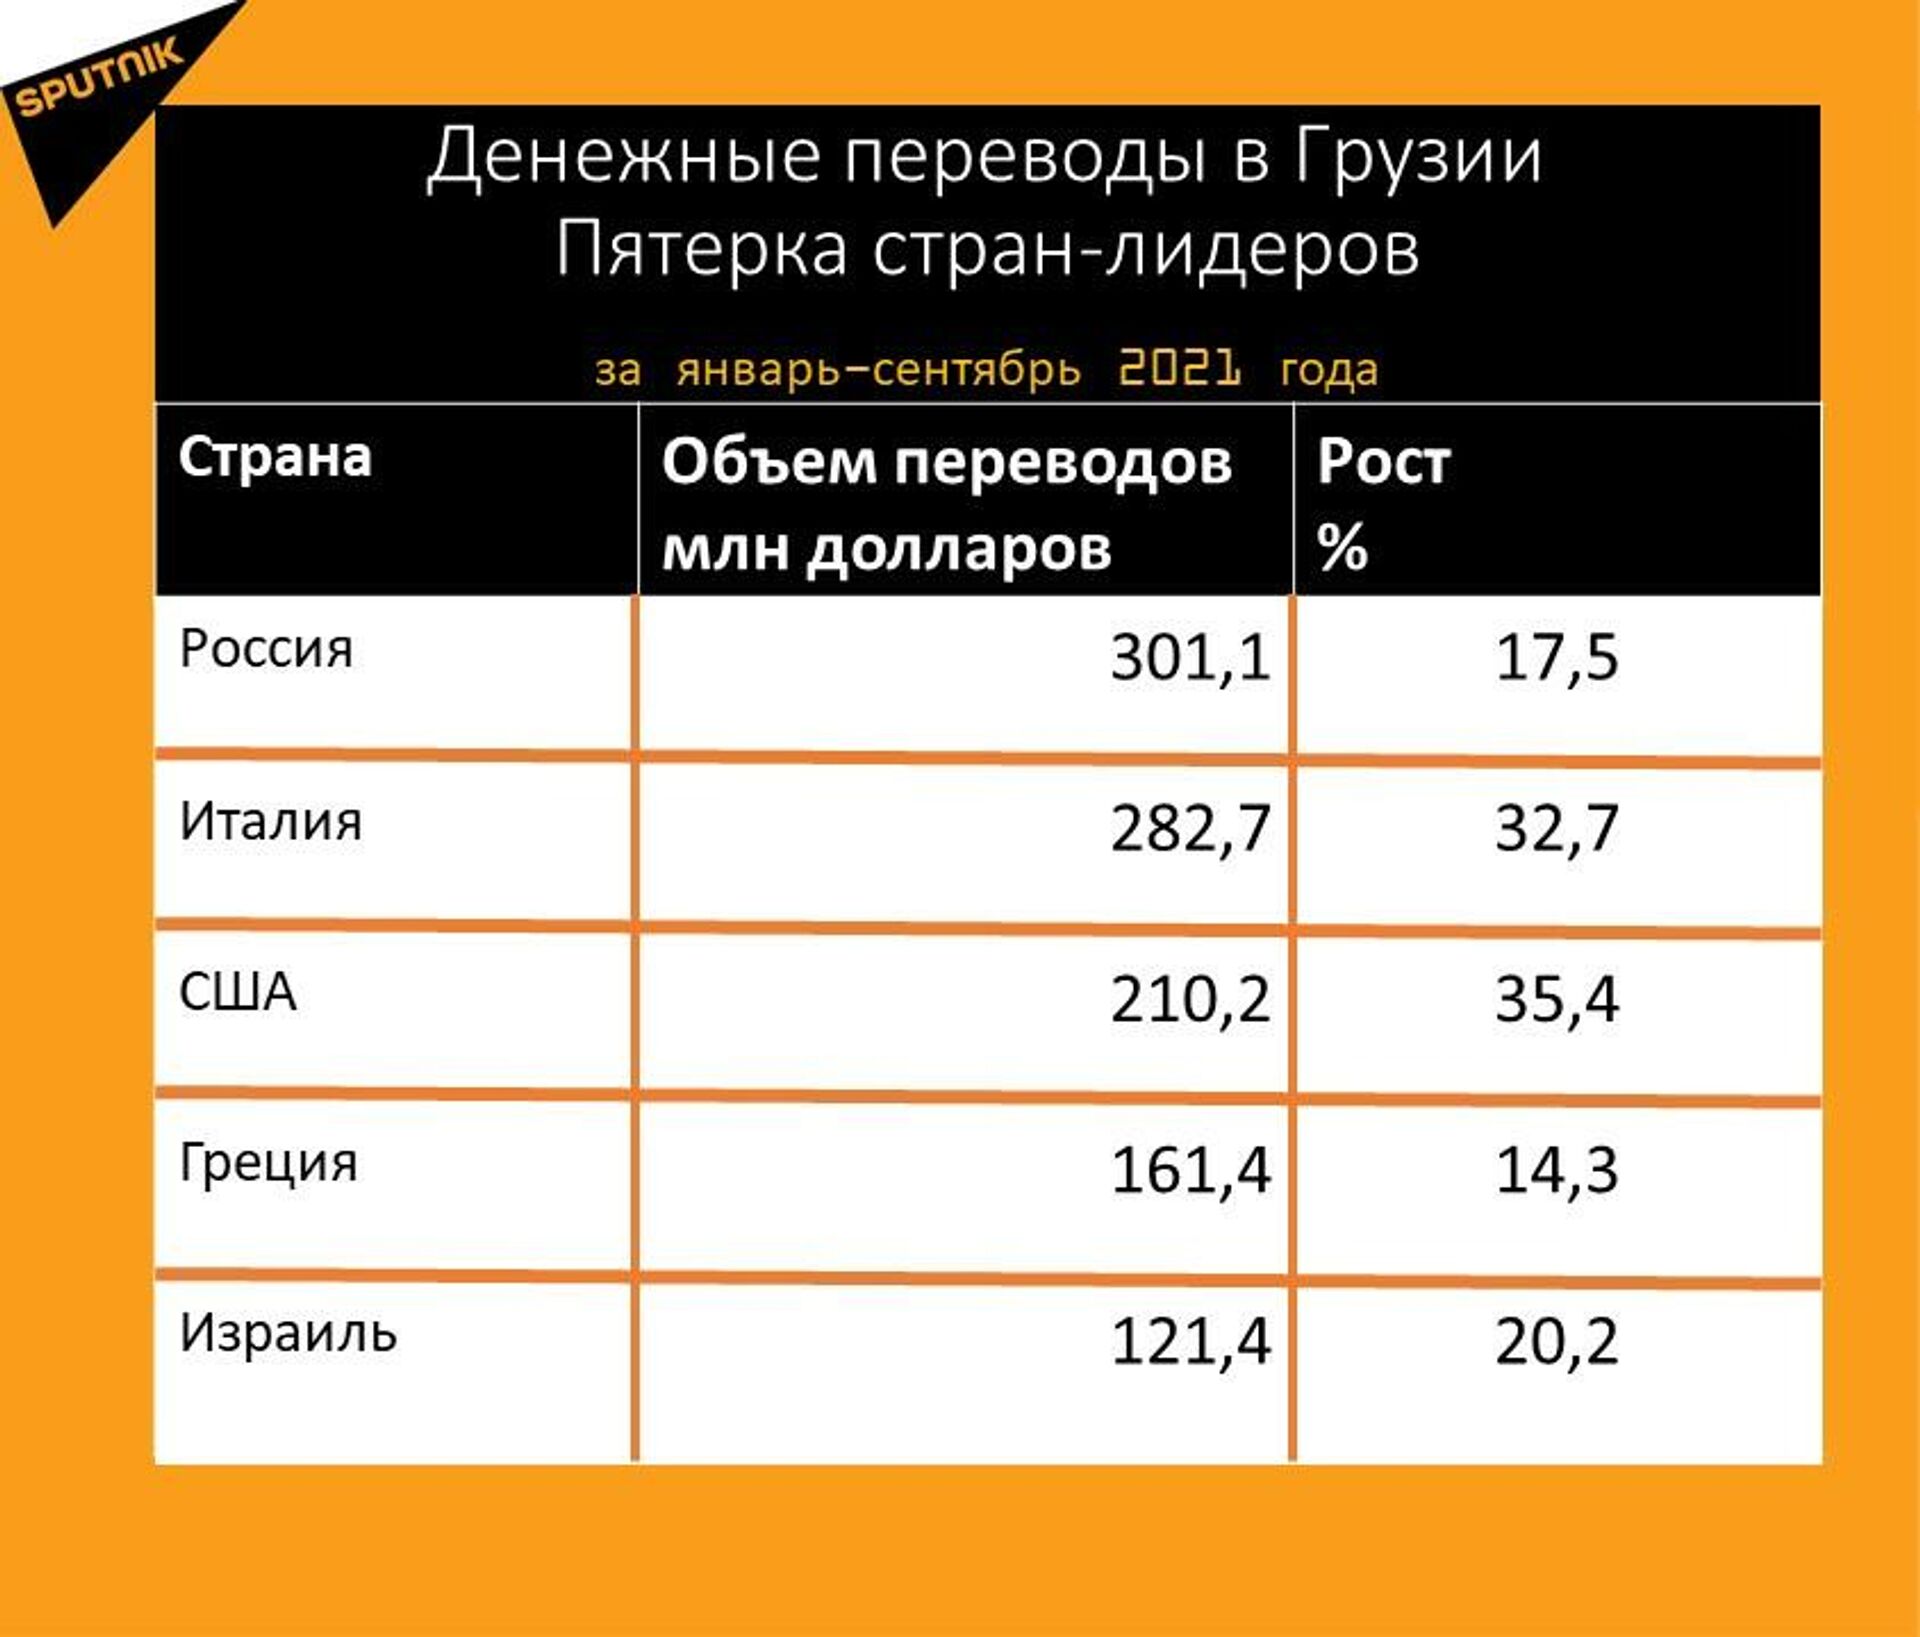 Статистика денежных переводов в Грузию за январь-сентябрь 2021 года - Sputnik Грузия, 1920, 16.10.2021